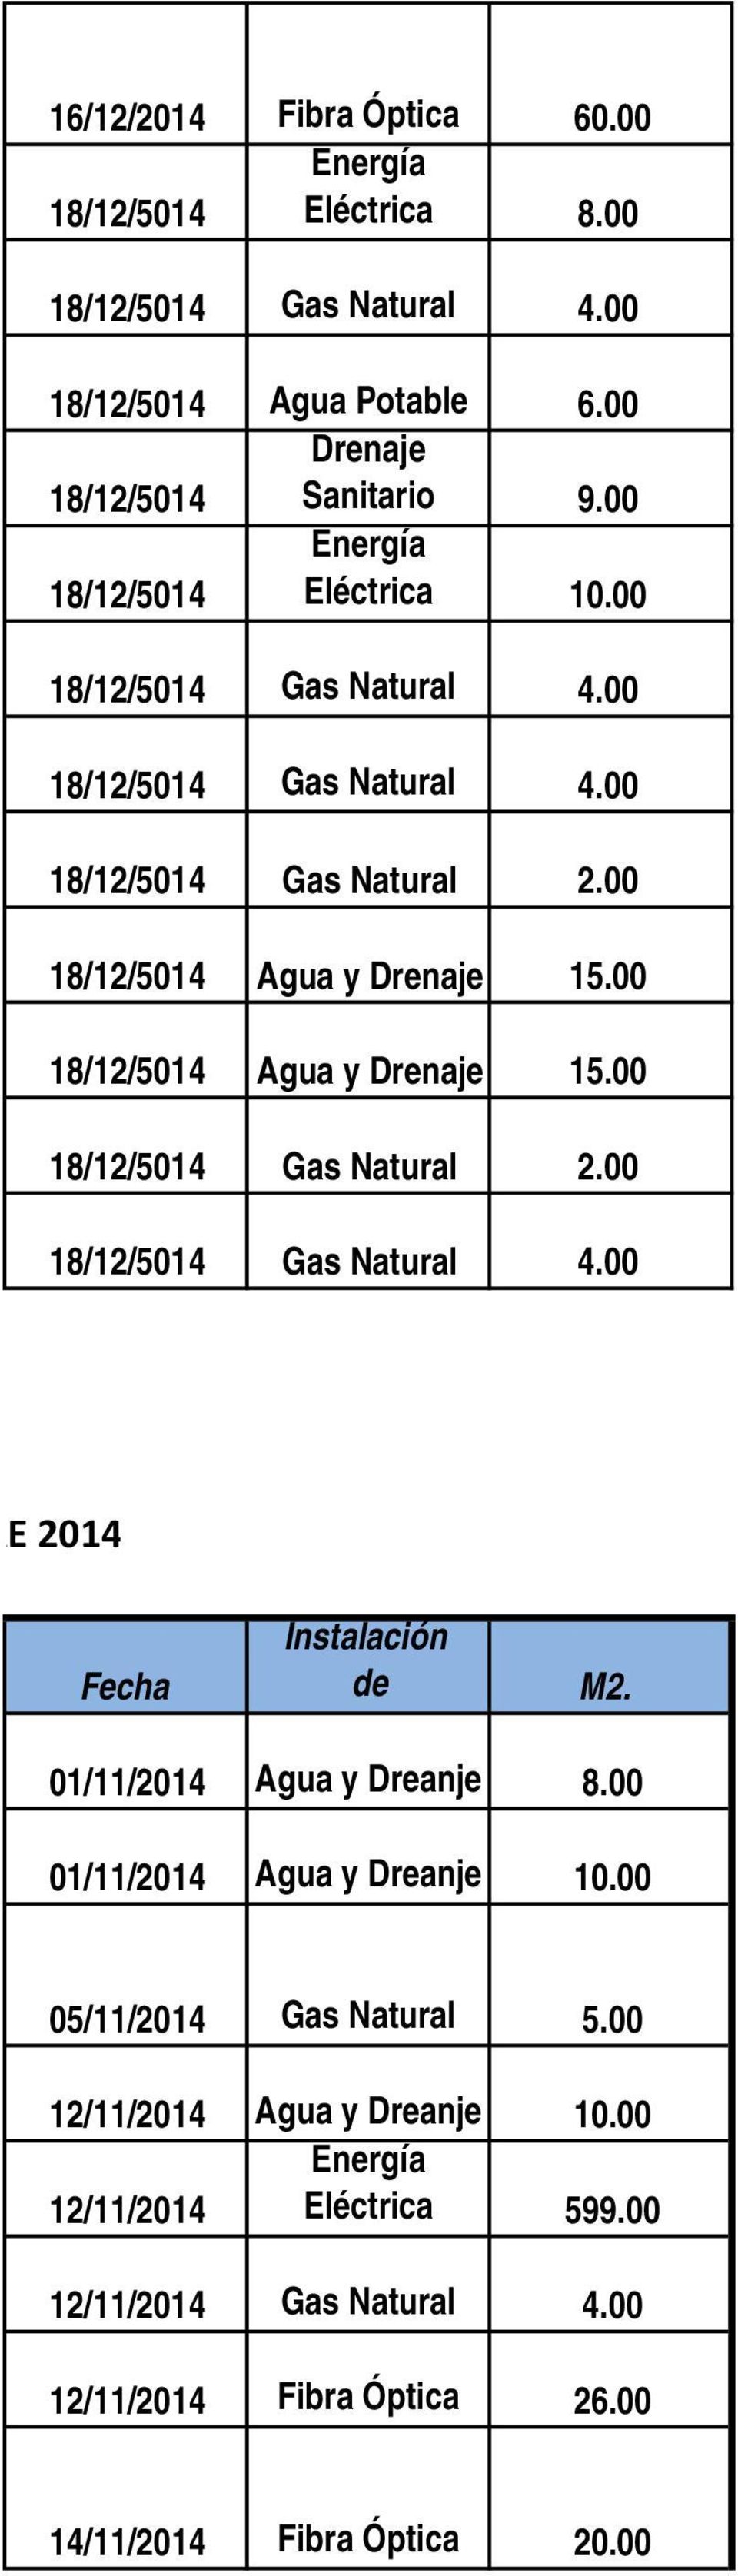 00 18/12/5014 Agua y Drenaje 15.00 18/12/5014 Gas Natural 2.00 18/12/5014 Gas Natural 4.00 RE 2014 Fecha Instalación de M2. 01/11/2014 Agua y Dreanje 8.